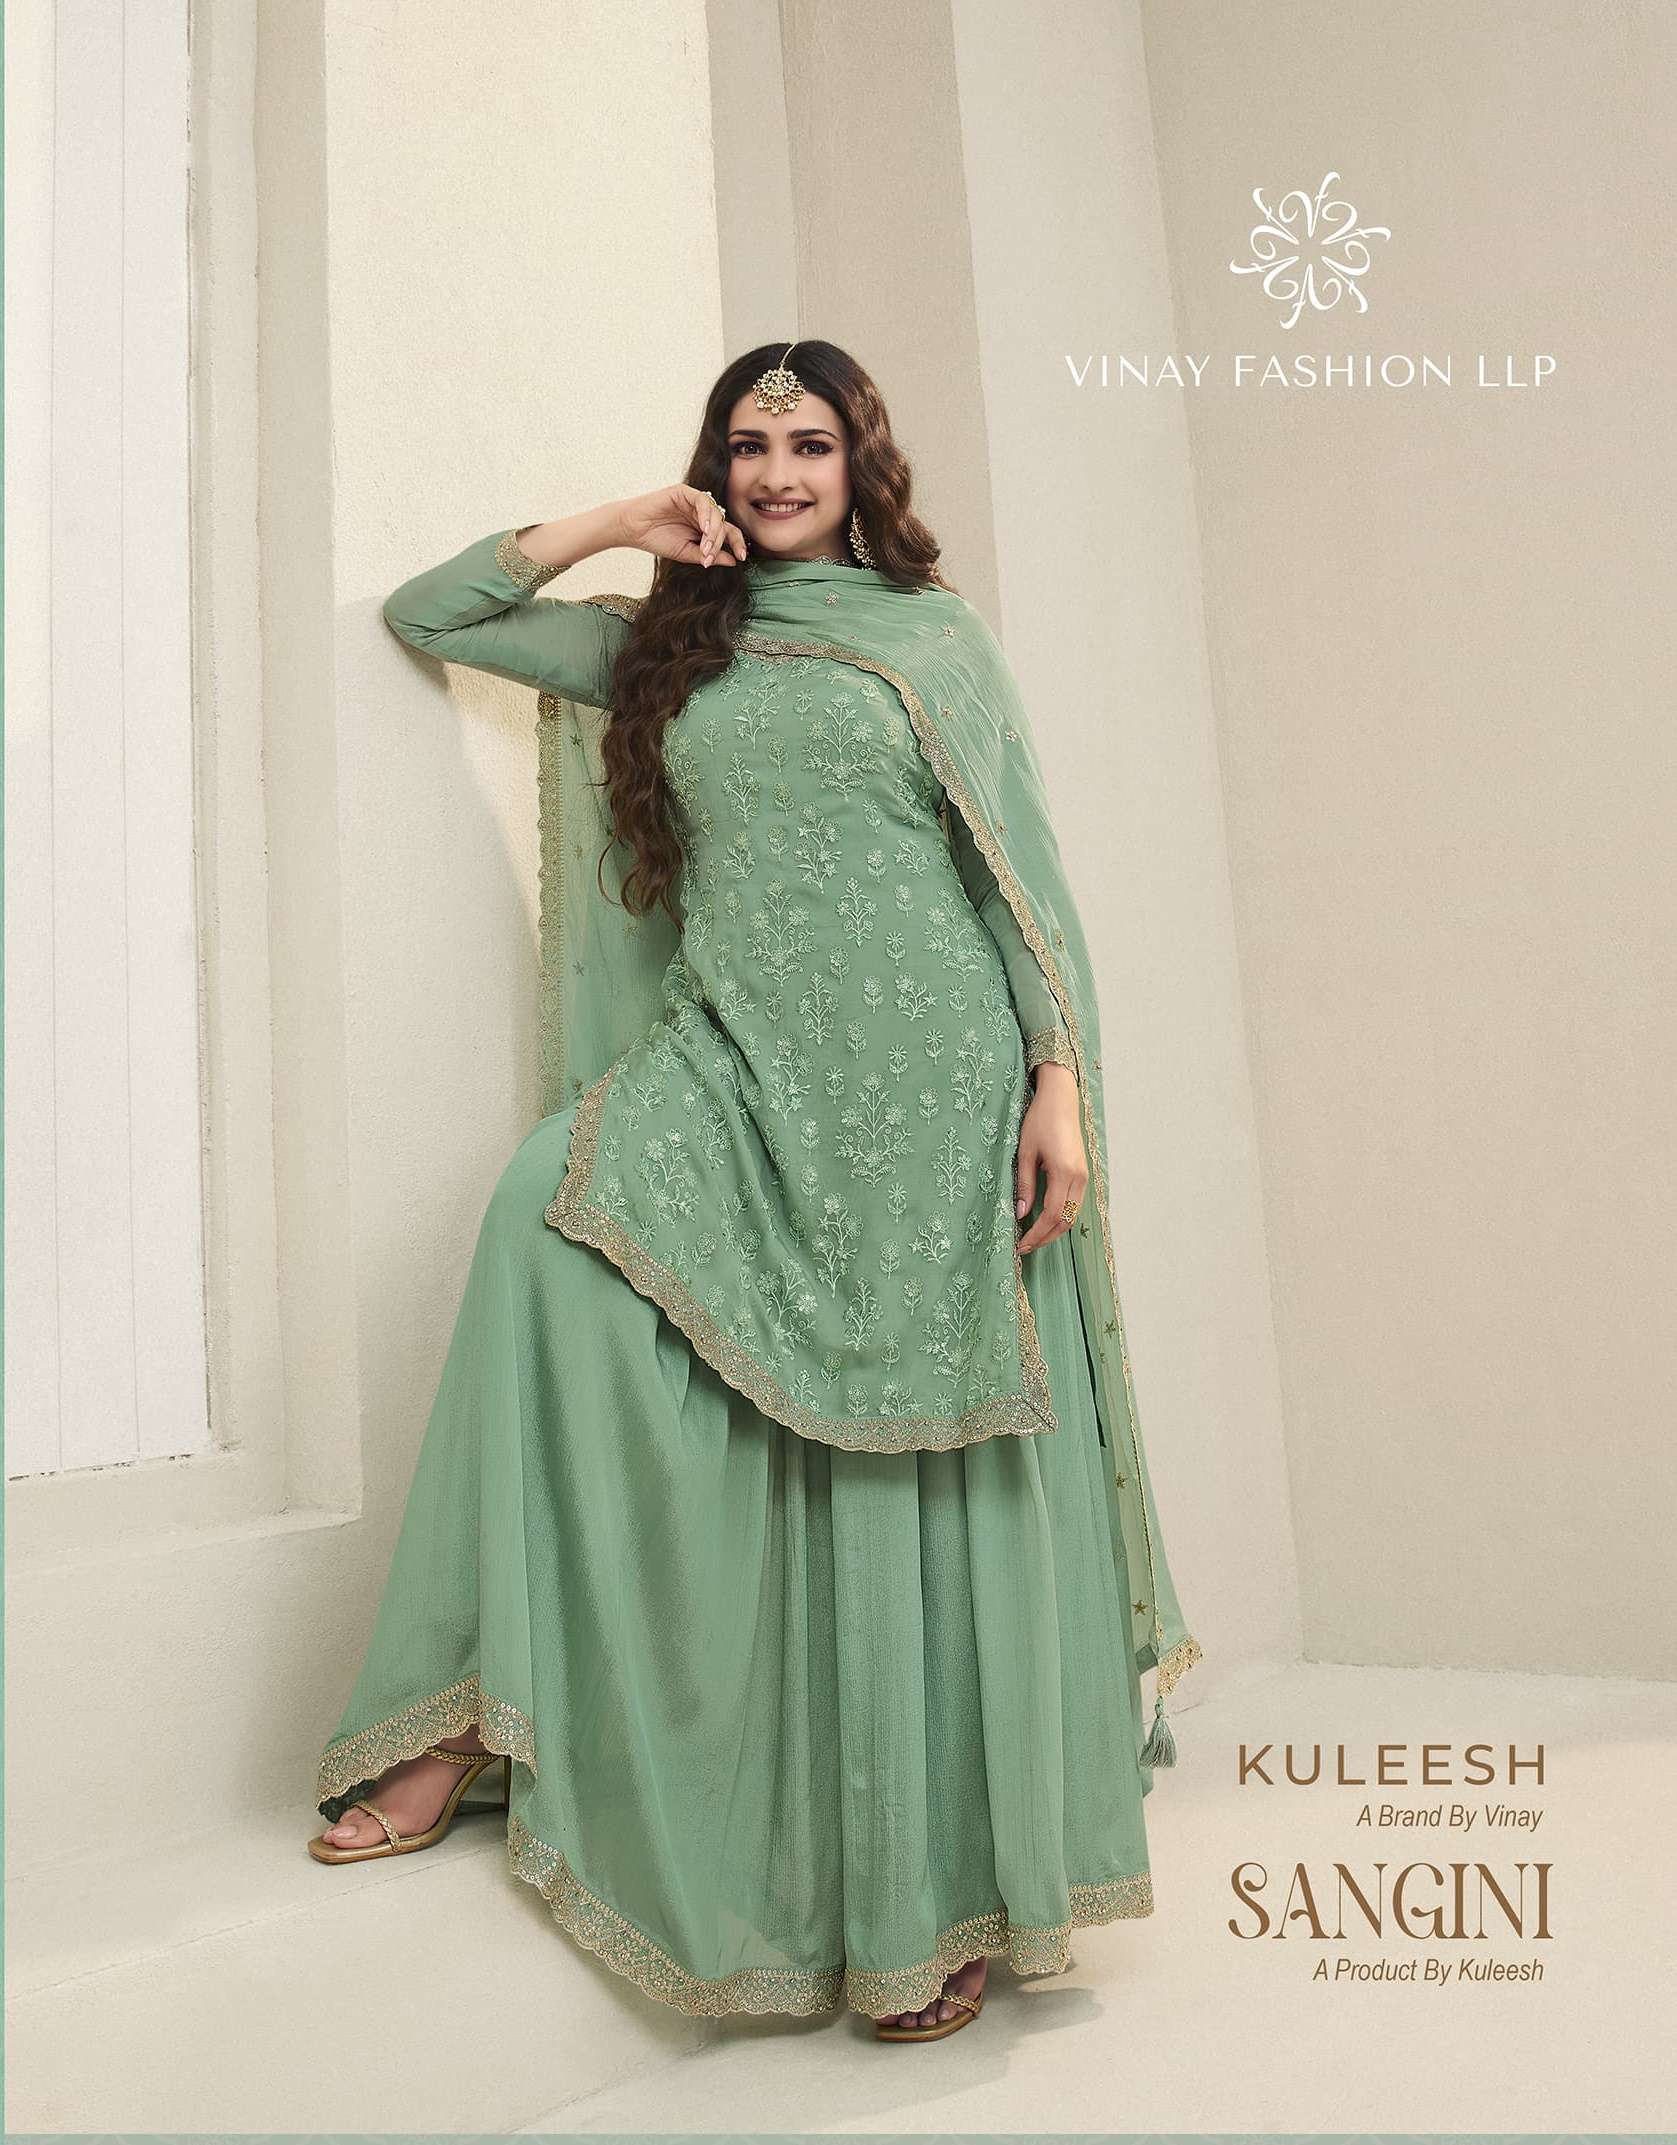 Vinay Fashion Kuleesh Sangini Organza with EMbroidery work F...